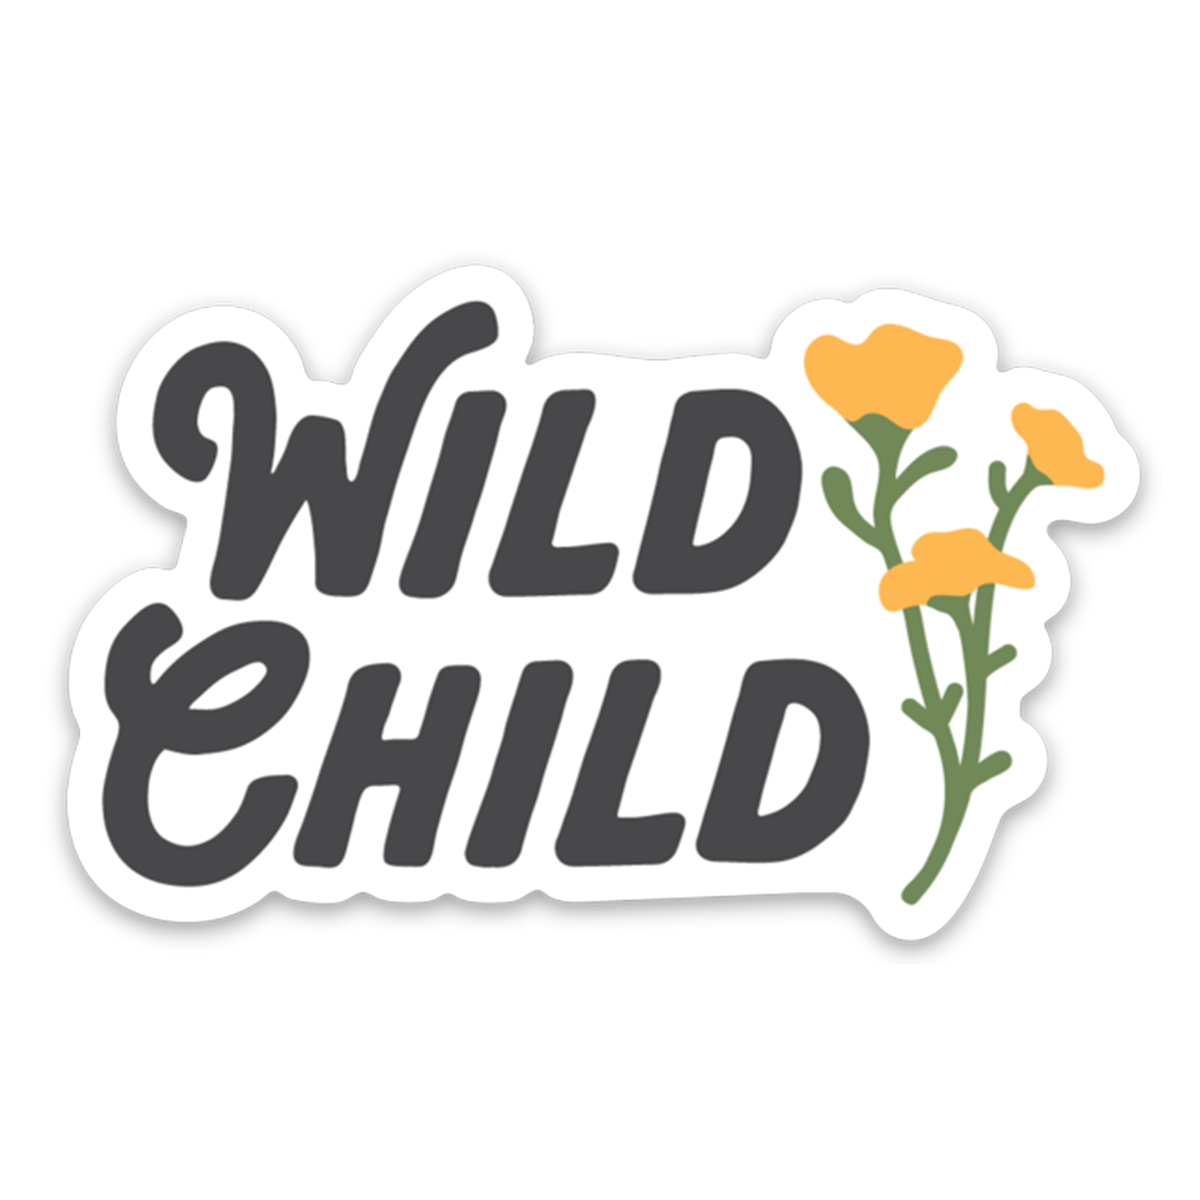 Wild Child sticker by Keep Nature Wild